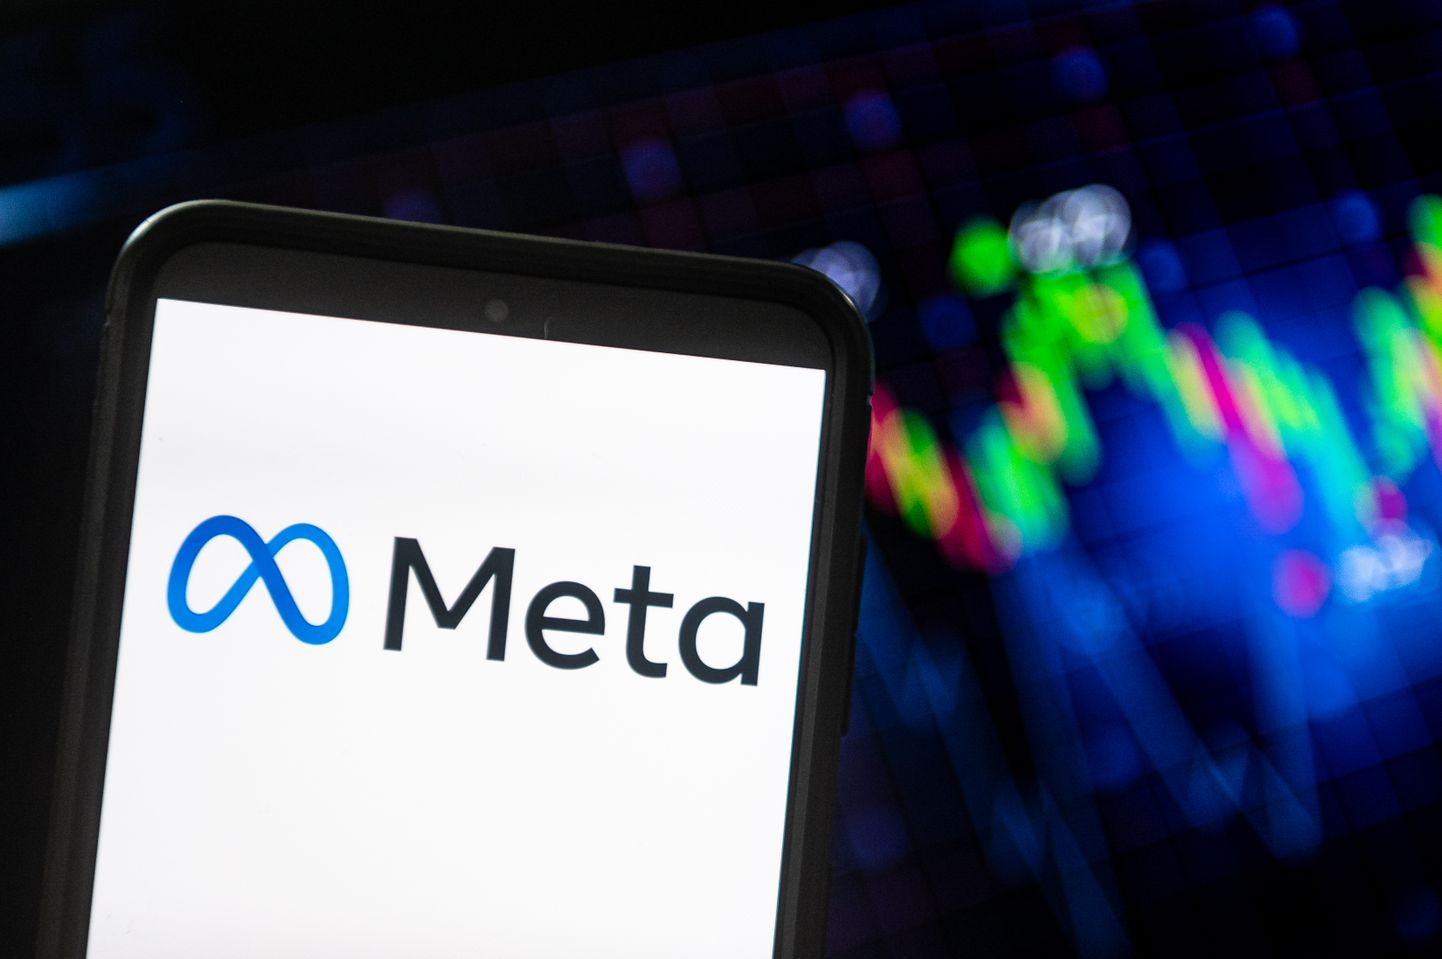 ASV tehnoloģiju lieluzņēmuma "Meta" logo.